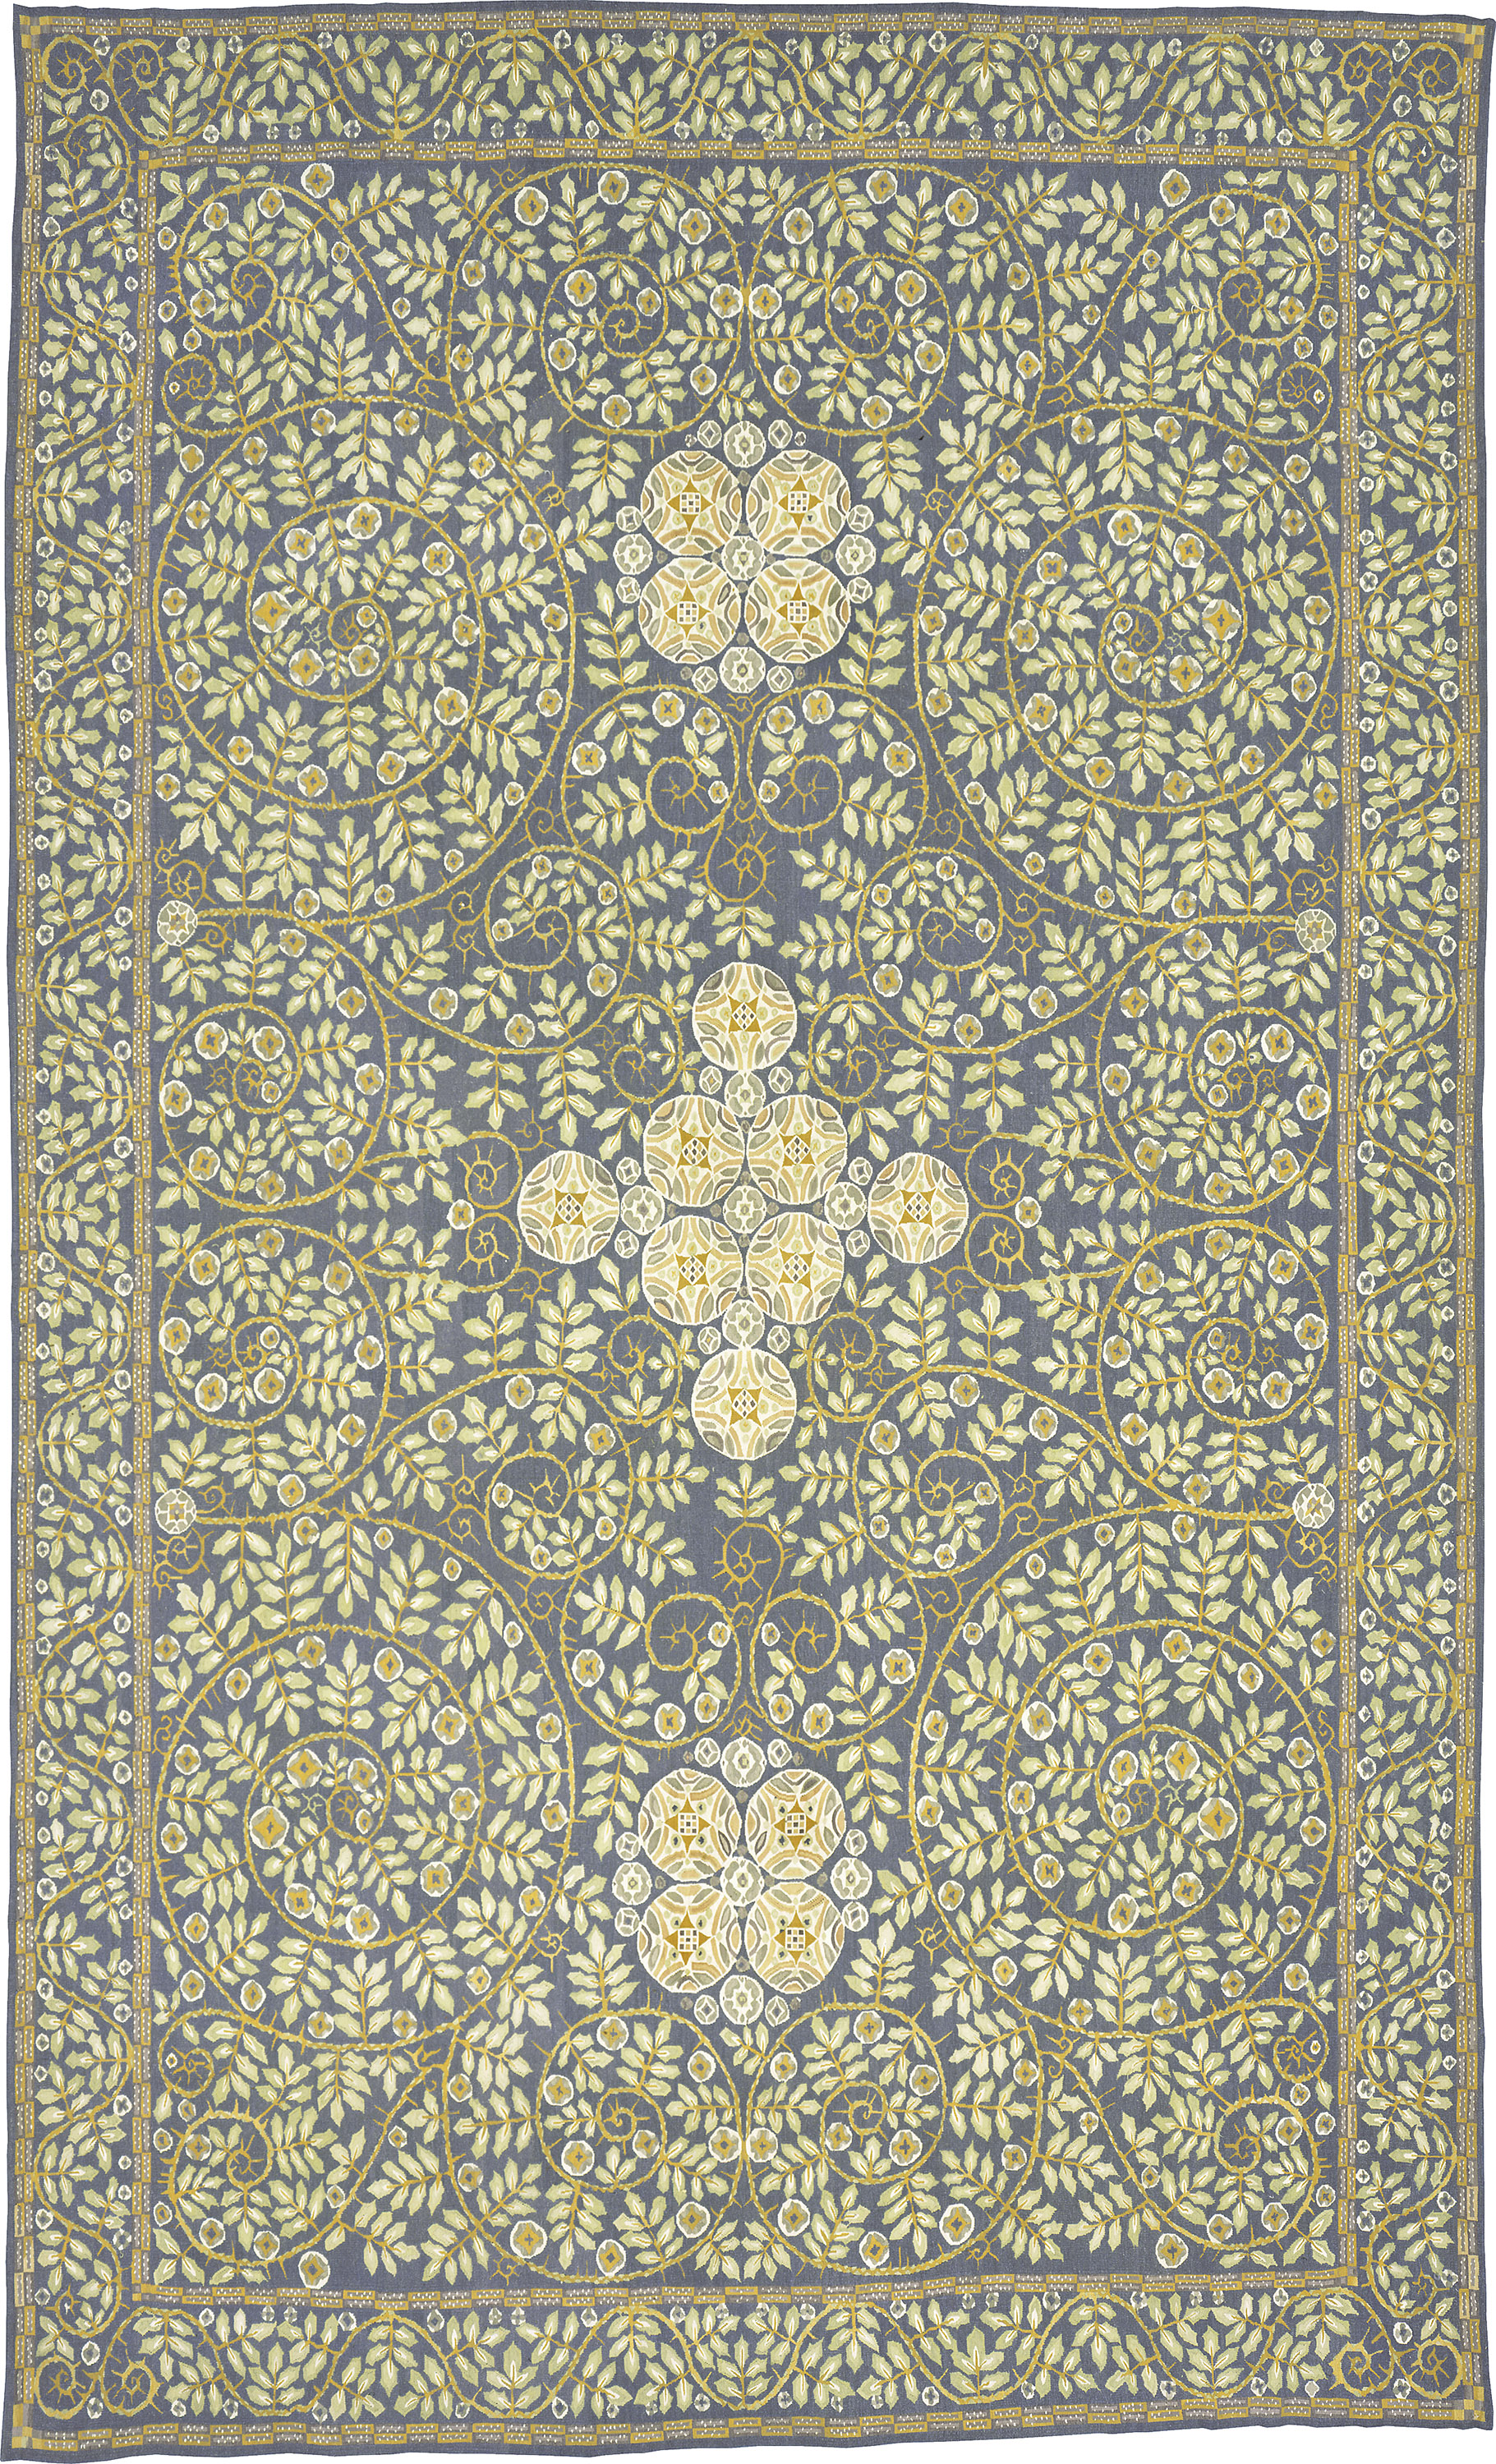 WIENER WERKSTATTE DESIGN | Custom Modern Carpets | FJ Hakimian | Carpet Gallery in NY